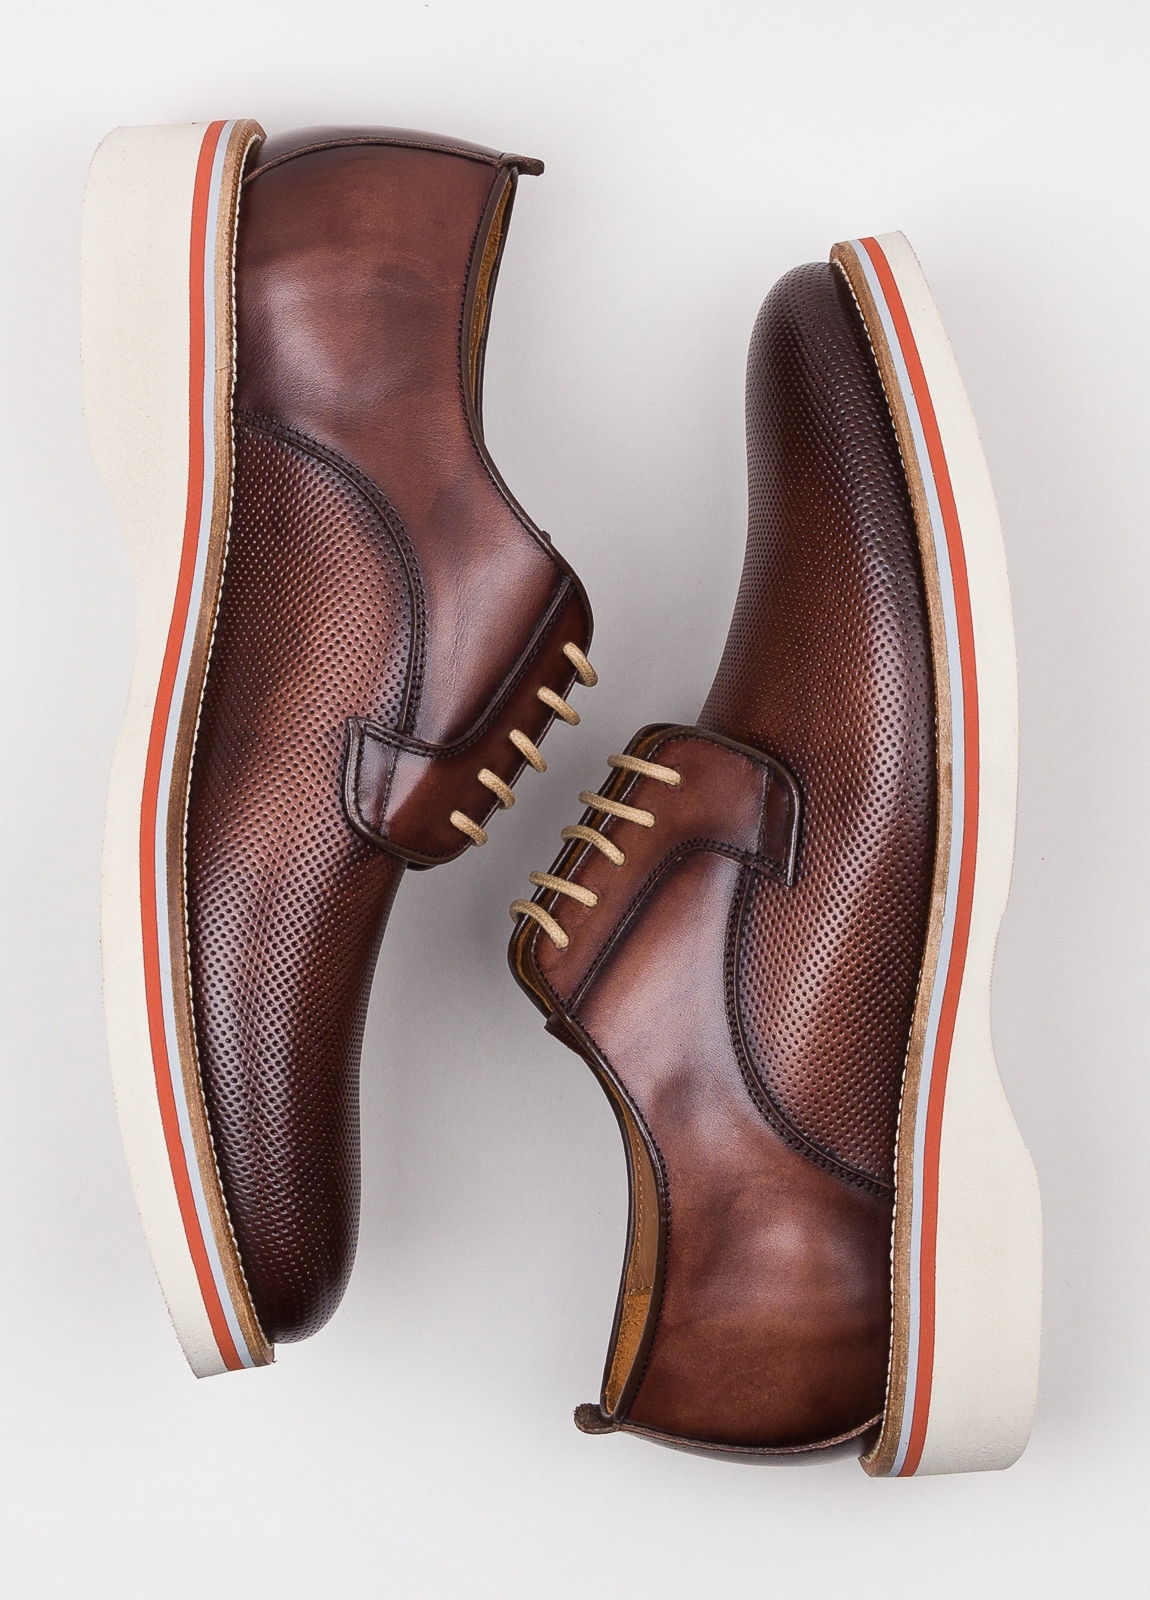 Zapato sport wear furest colección troquelado marrón - Ítem1